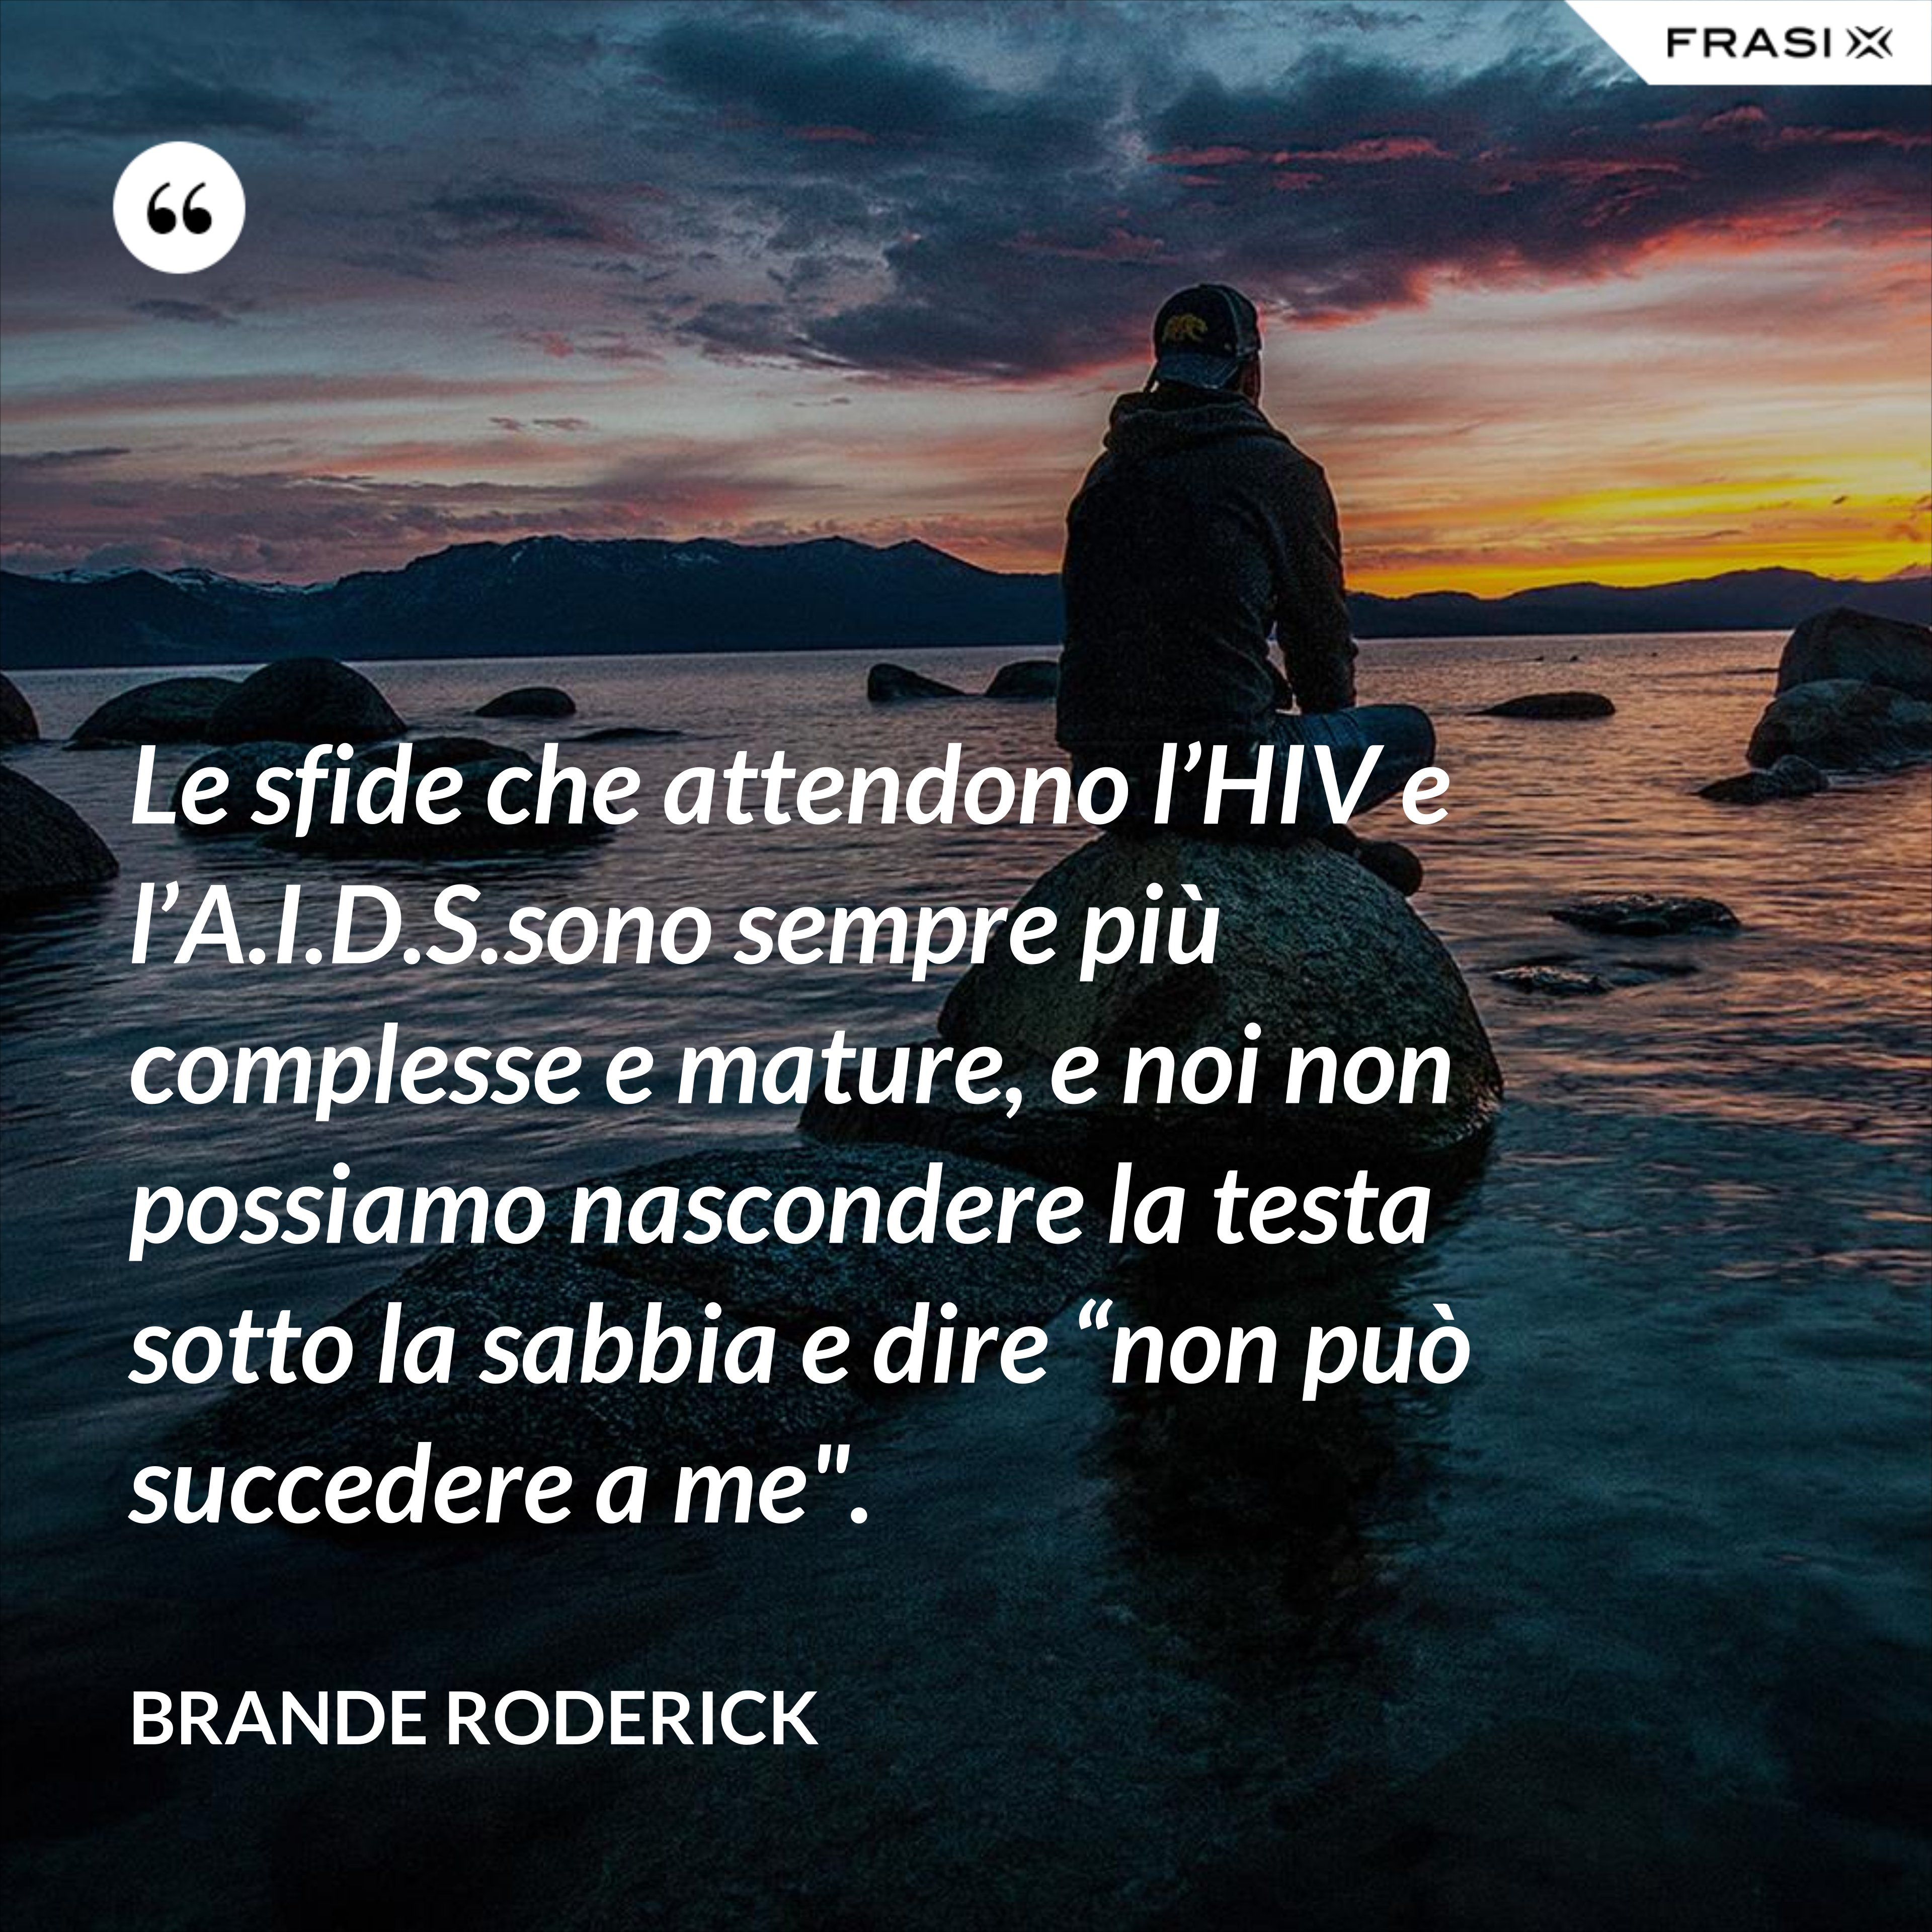 Le sfide che attendono l’HIV e l’A.I.D.S.sono sempre più complesse e mature, e noi non possiamo nascondere la testa sotto la sabbia e dire “non può succedere a me". - Brande Roderick